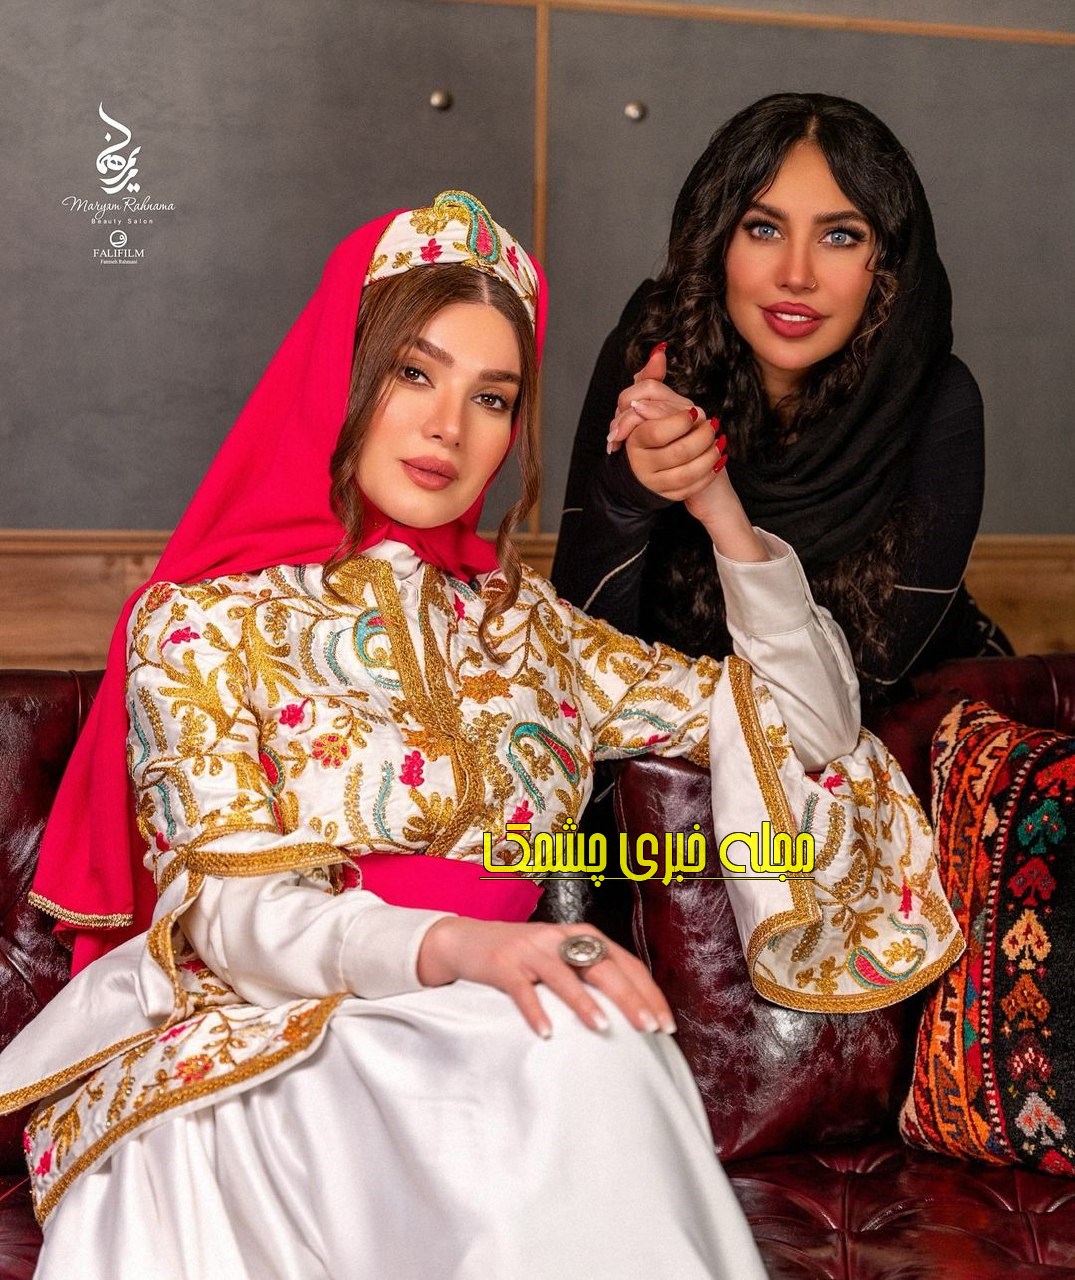 تغییر چهره متین ستوده بازیگر نقش ترانه “سریال لیسانسیه ها”در پروژه دختران ایران+عکس های جذاب با لباس سنتی